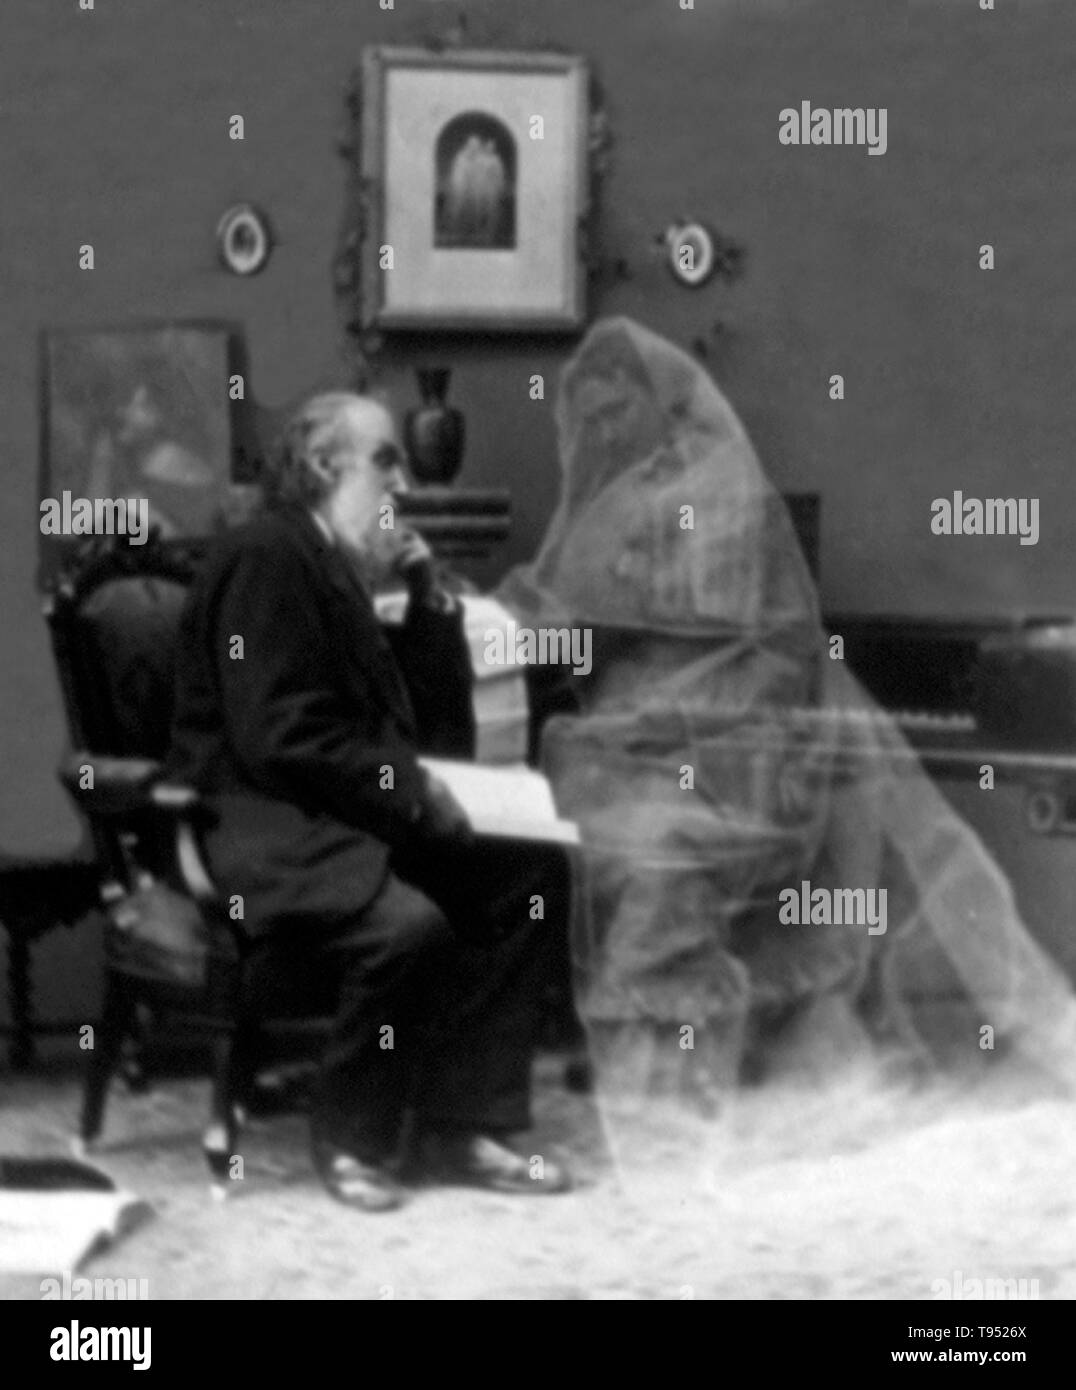 Titel: 'Memories der Vergangenheit" zeigt einen alten Mann sitzt und seine Frau envisioning im Brautkleid. Im späten 19. Jahrhundert Amateur- und kommerzielle Fotografen erstellten Images, die in Erstaunen zu versetzen, amüsieren und unterhalten. Stockfoto